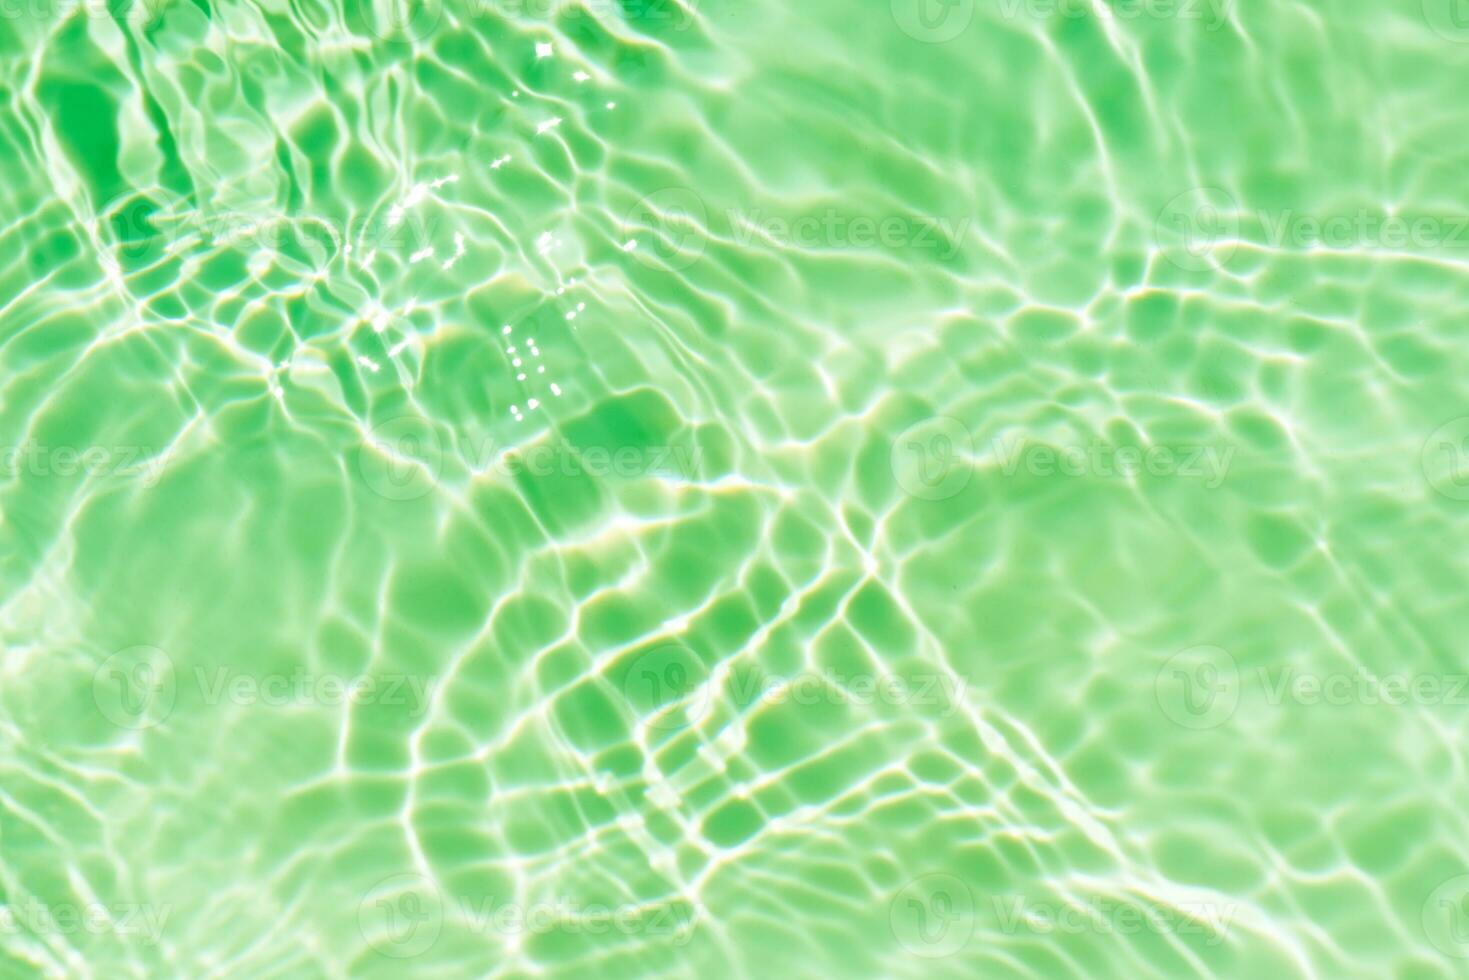 desfocar a textura de superfície de água calma de cor azul transparente turva com salpicos e bolhas. fundo de natureza abstrata na moda. ondas de água à luz do sol com espaço de cópia. aquarela azul brilhando foto